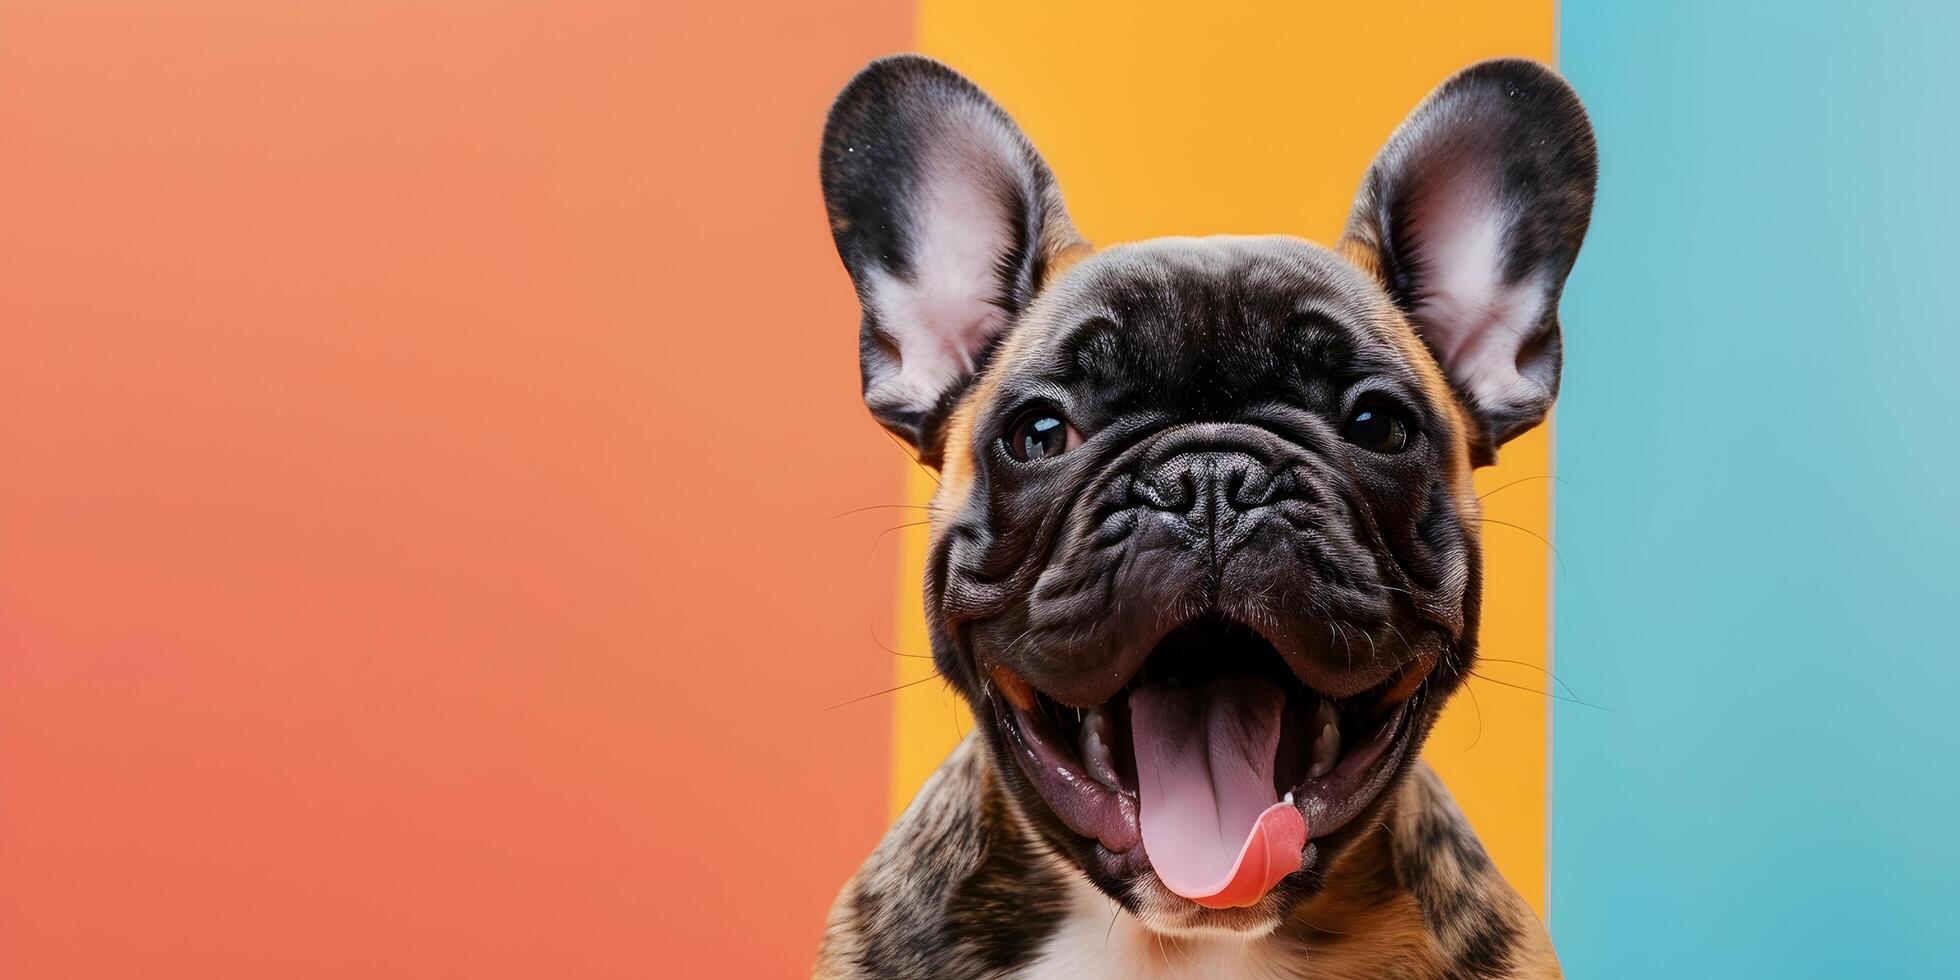 franska bulldogg hund den där har öppnad dess mun och pinnar ut dess tunga foto